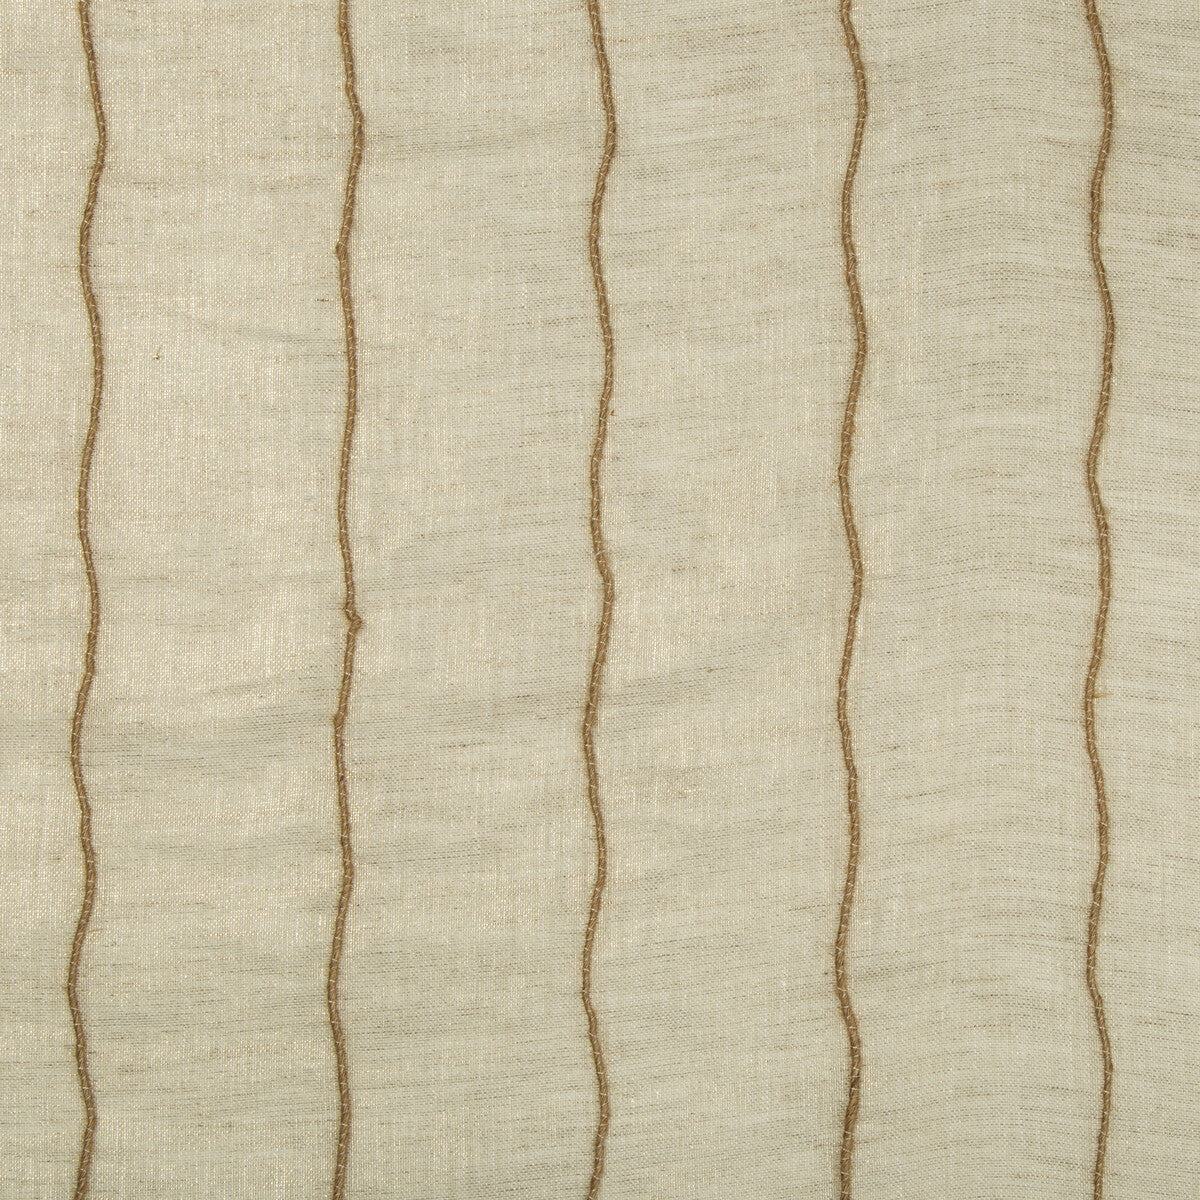 Kravet Basics fabric in 4425-416 color - pattern 4425.416.0 - by Kravet Basics